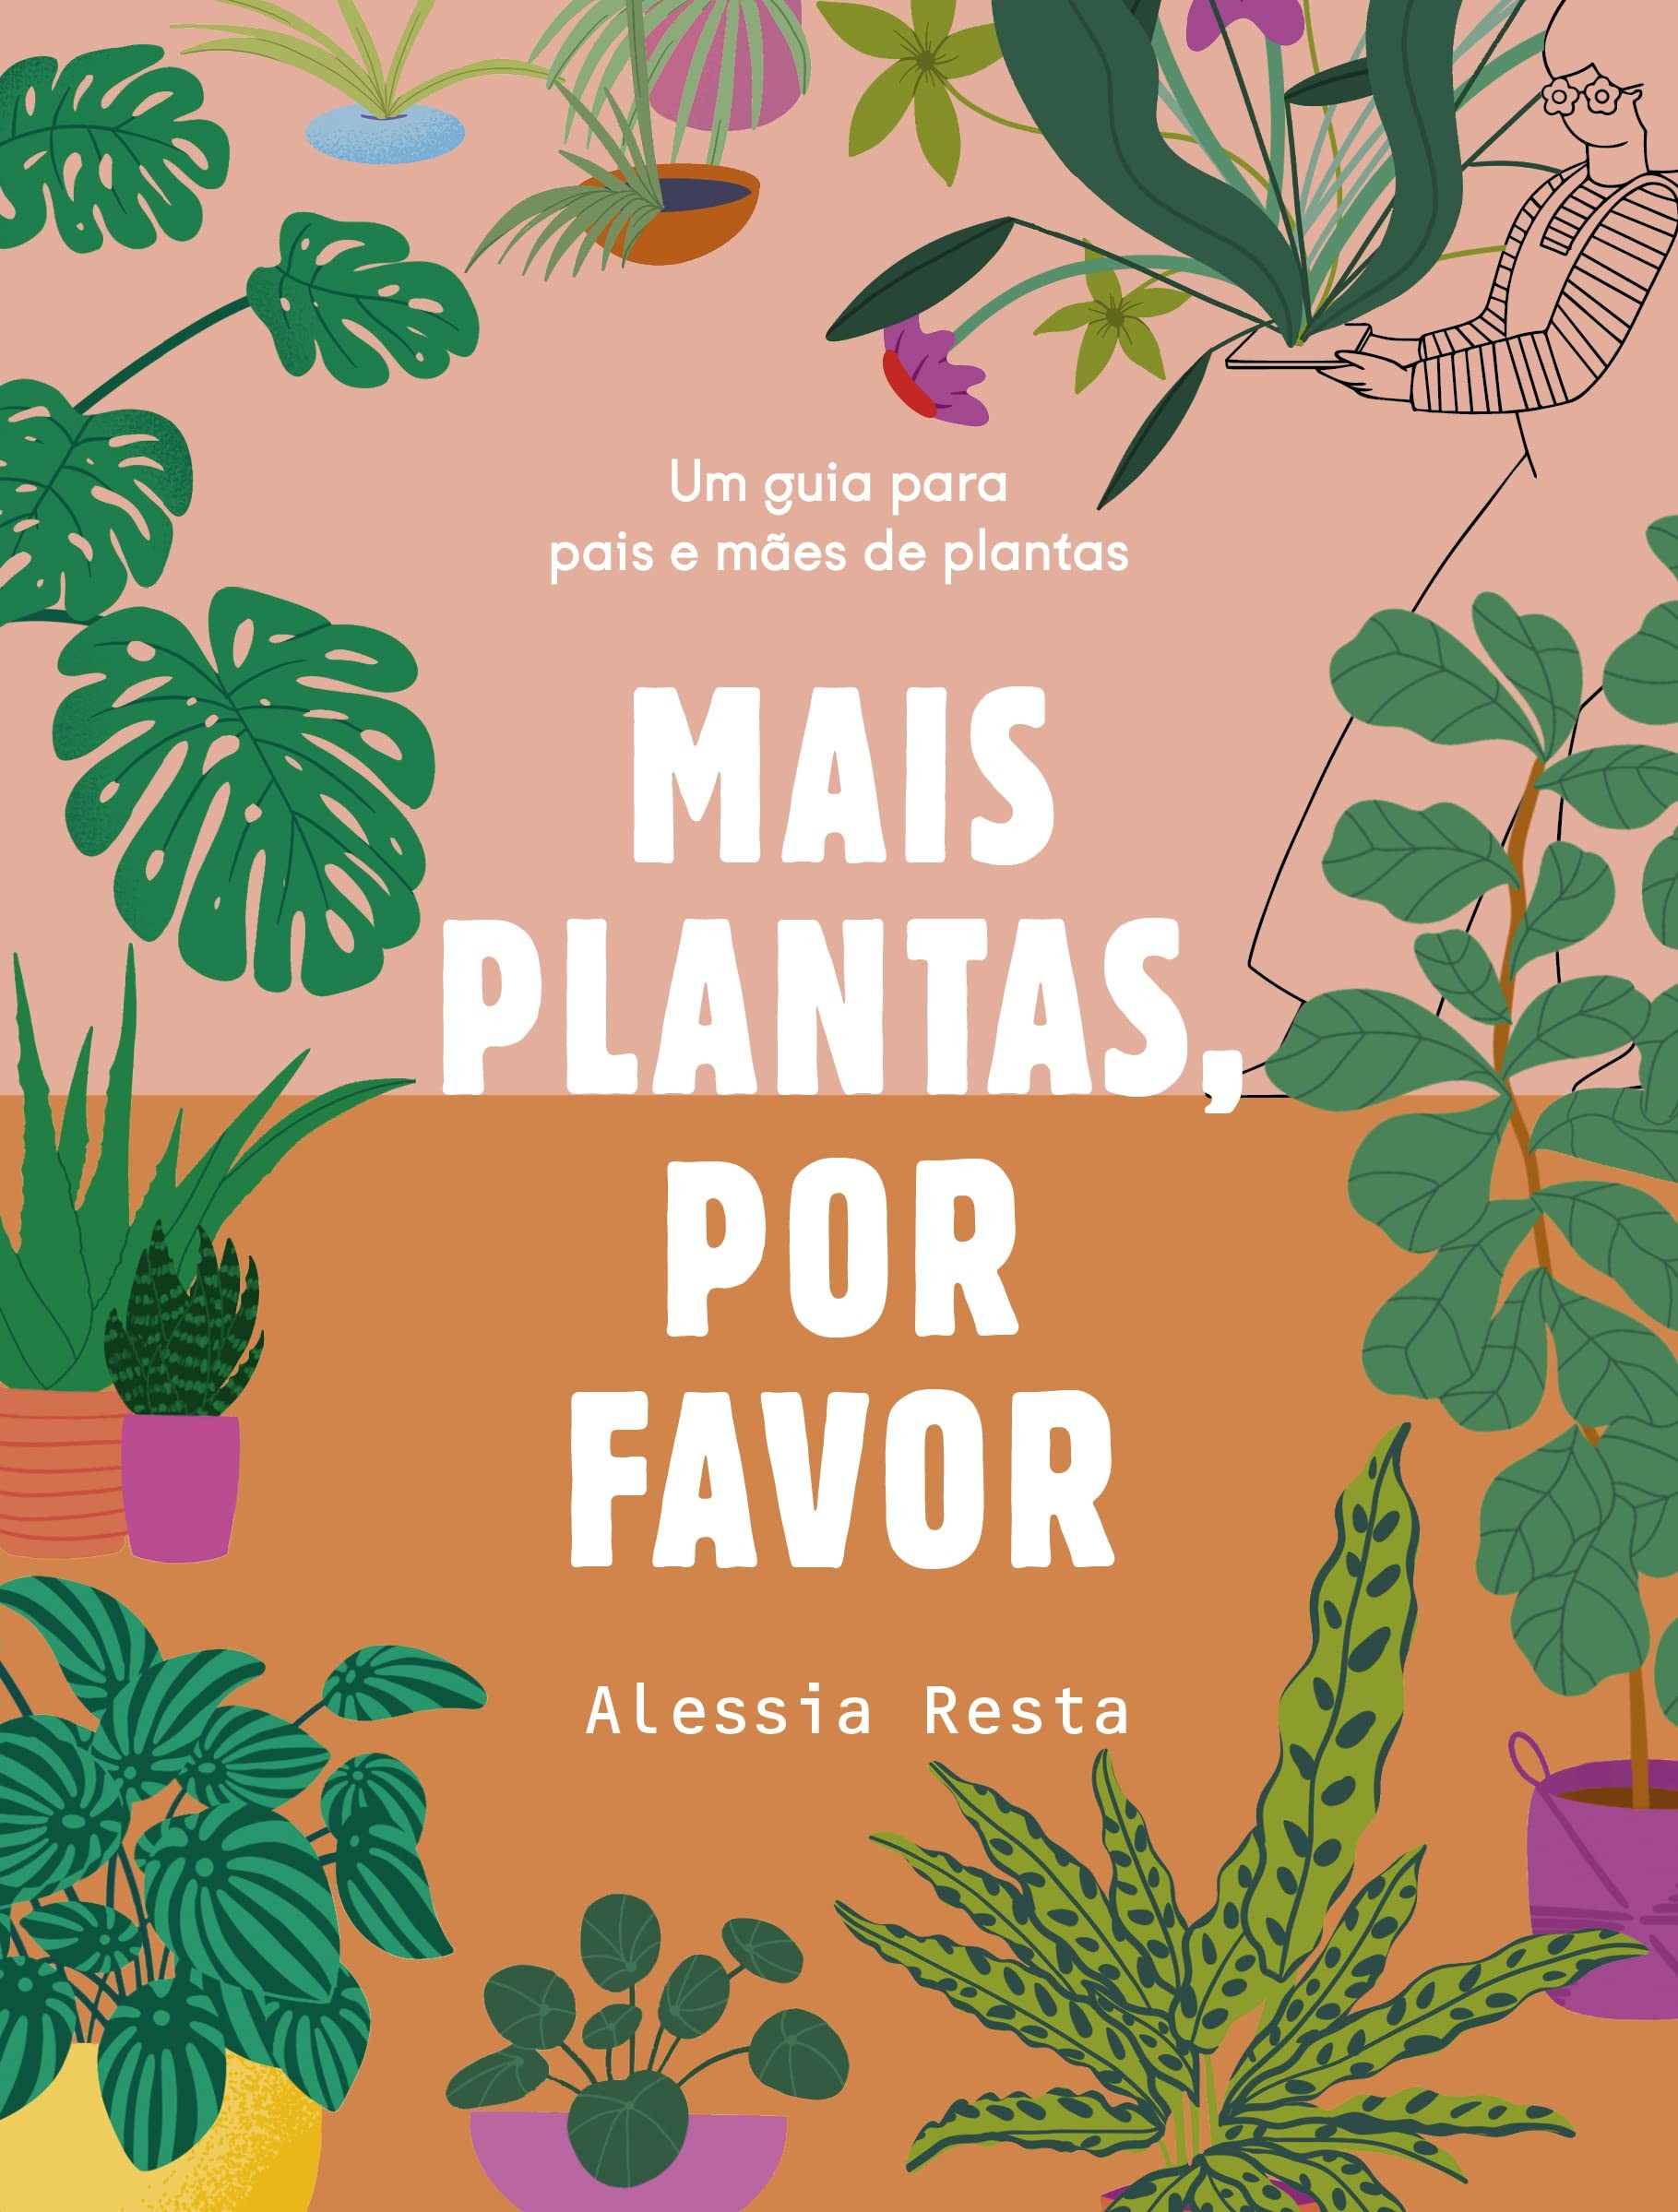 Mais plantas, por favor: um guia para pais e mães de plantas, de Alessia Resta (Paralela, 192 páginas • Impresso: R$ 69,90) (Foto: Divulgação)